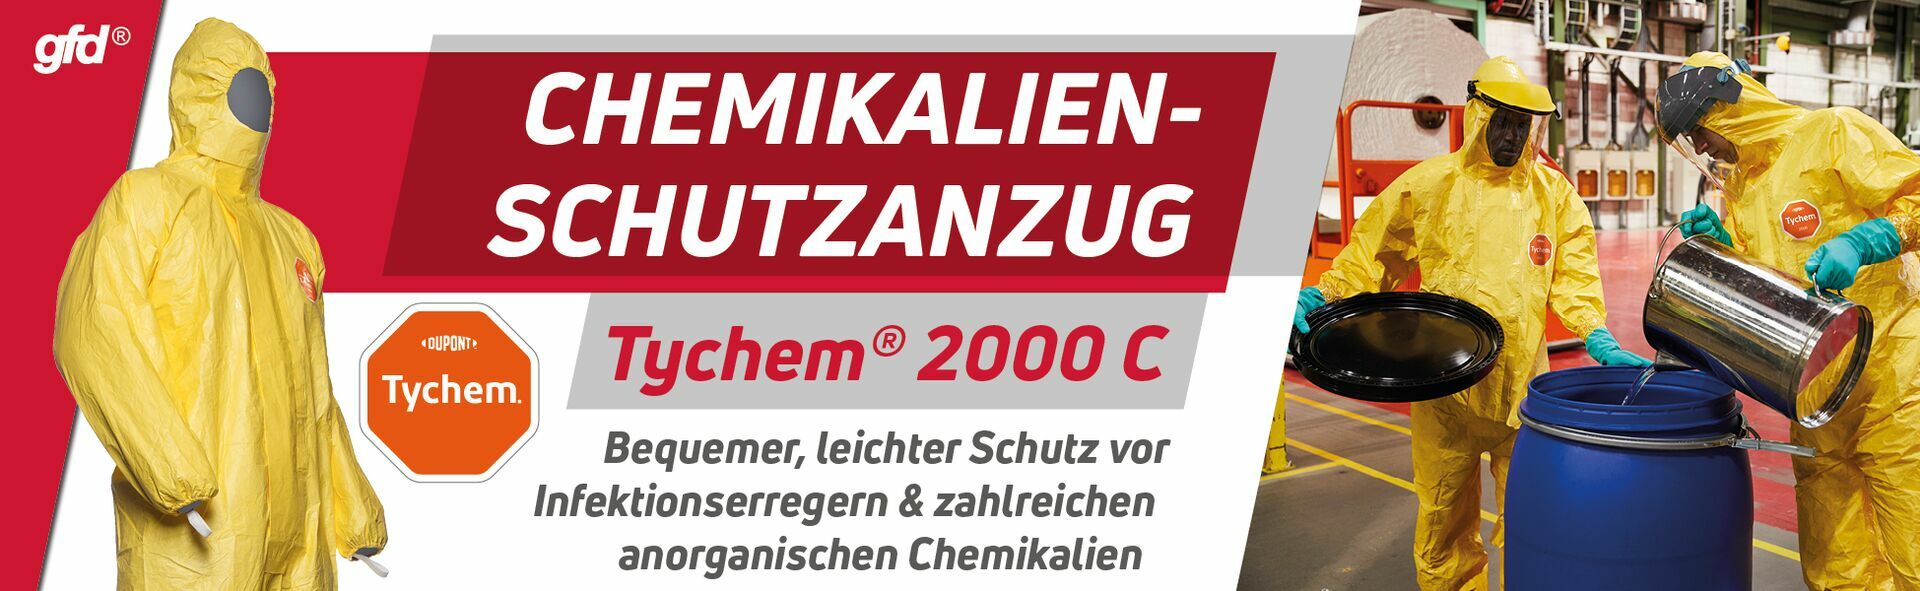 Dupont Tychem 2000 C